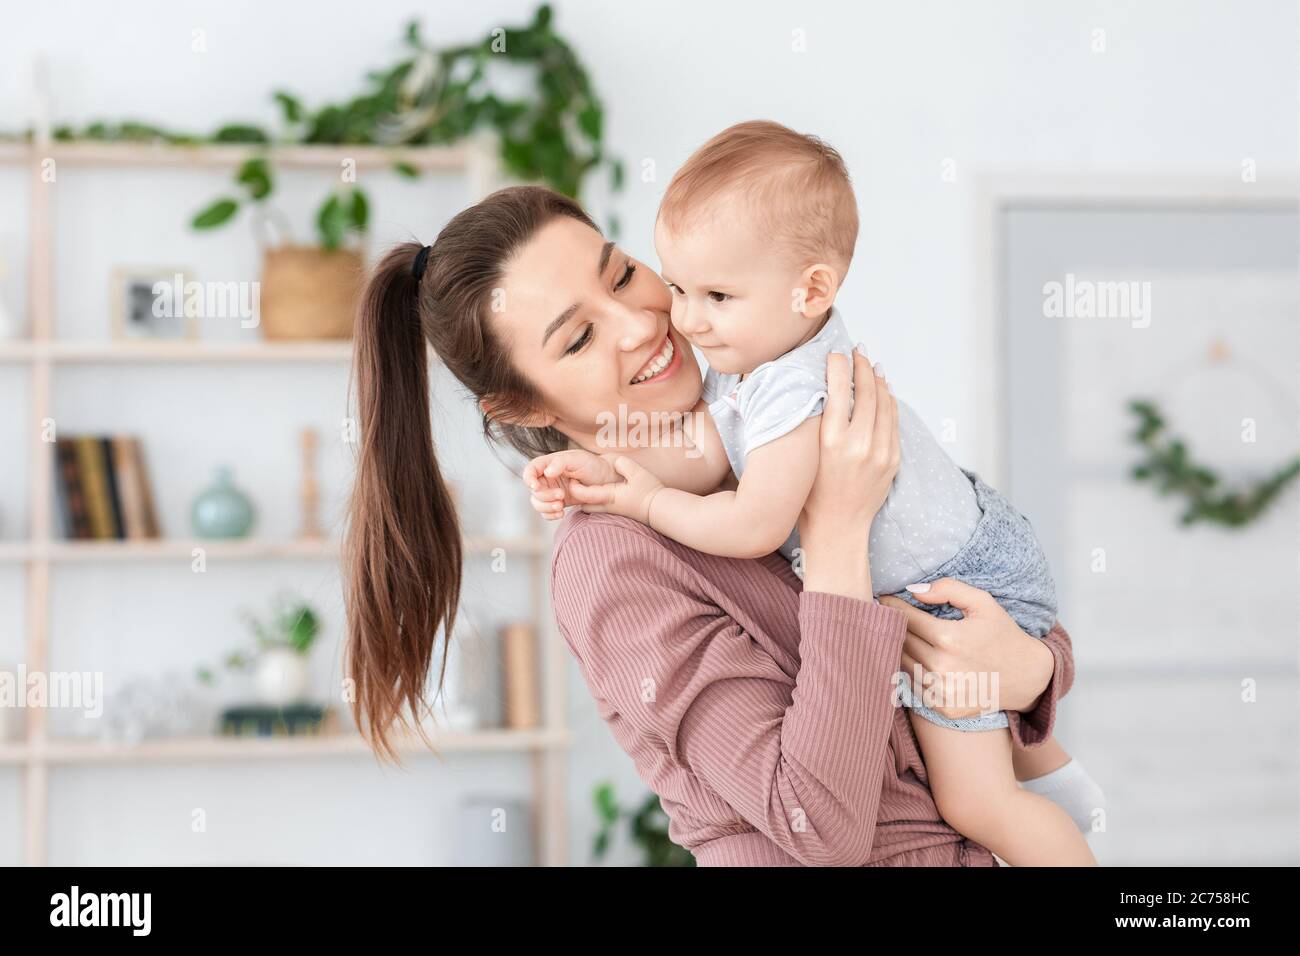 Glück Der Mutterschaft. Freudige Mutter hält niedlichen Kleinkind Baby auf ihren Händen Stockfoto